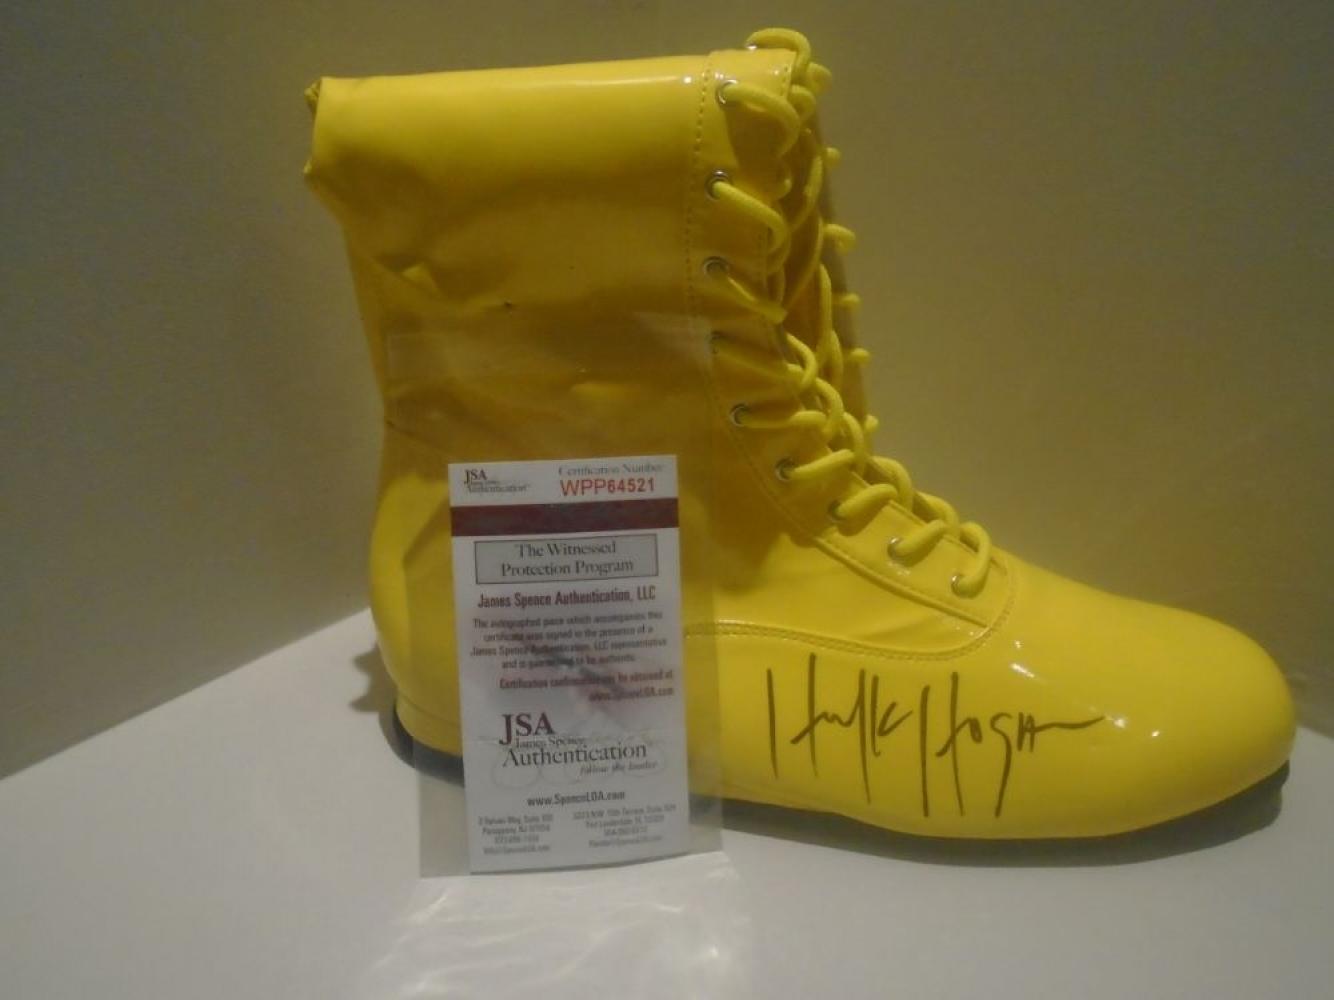 Razzall™ | Signed Hulk Hogan Boot